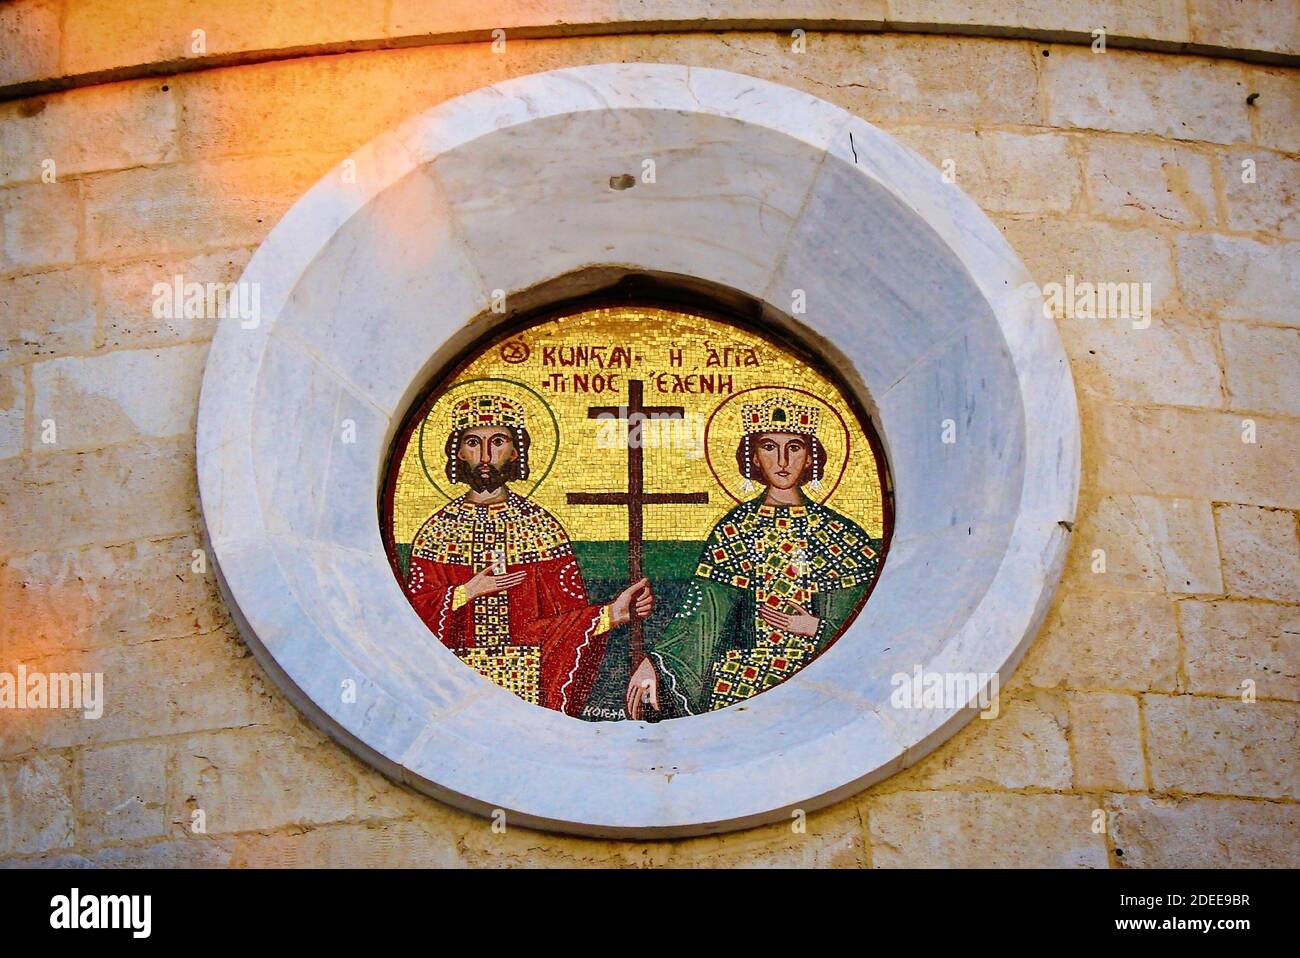 Schönes Mosaik des Heiligen Konstantin und Helen vor einer griechisch-orthodoxen Kirche in Athen, Griechenland, Februar 29 2020. Stockfoto